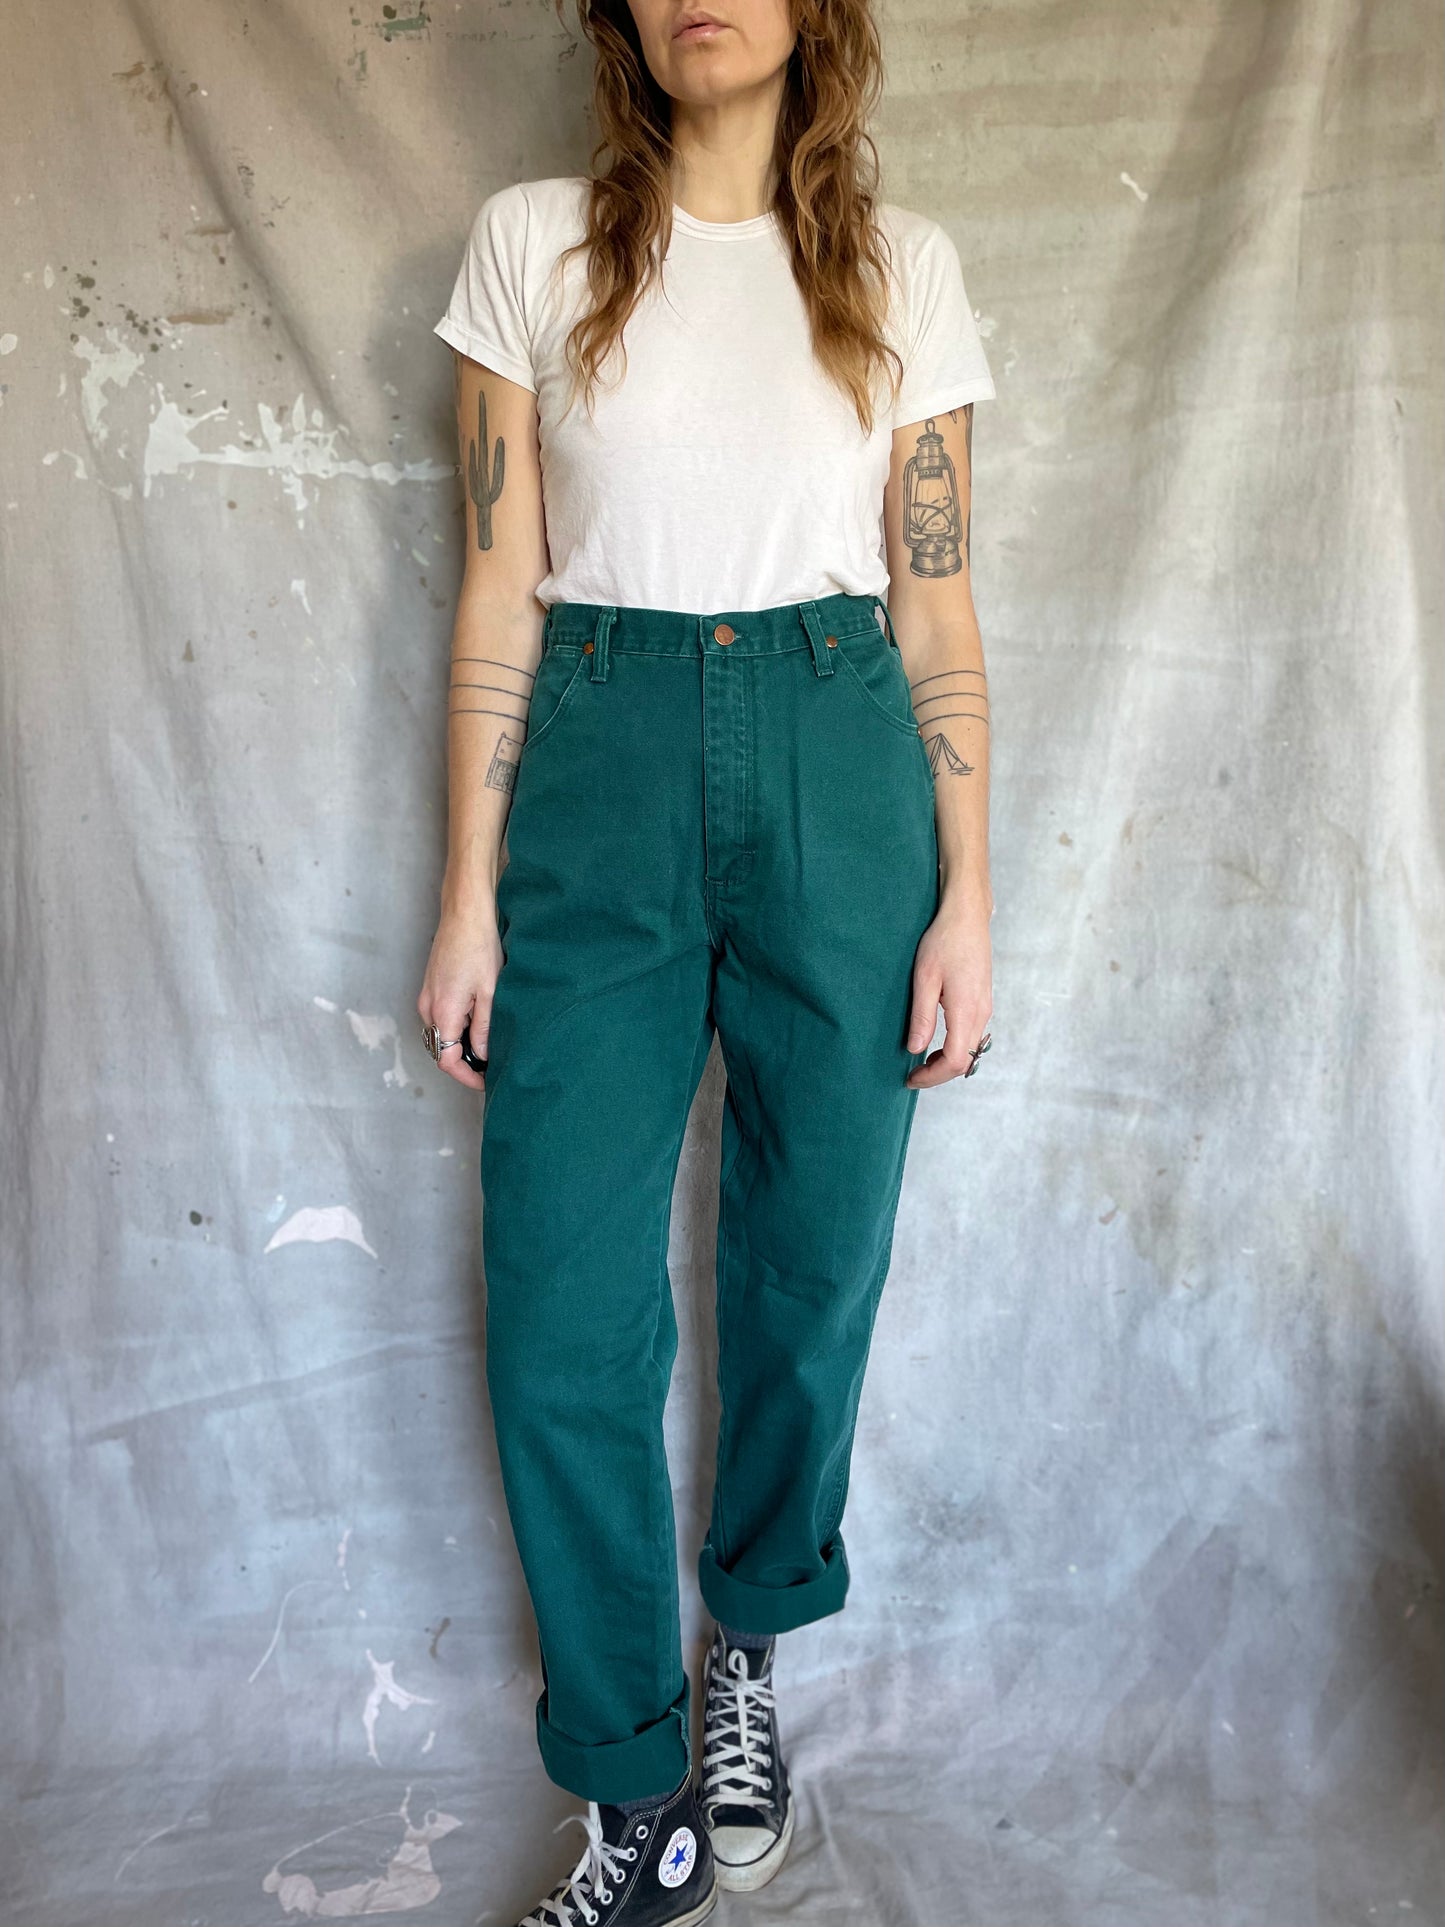 80s Green Wrangler Jeans